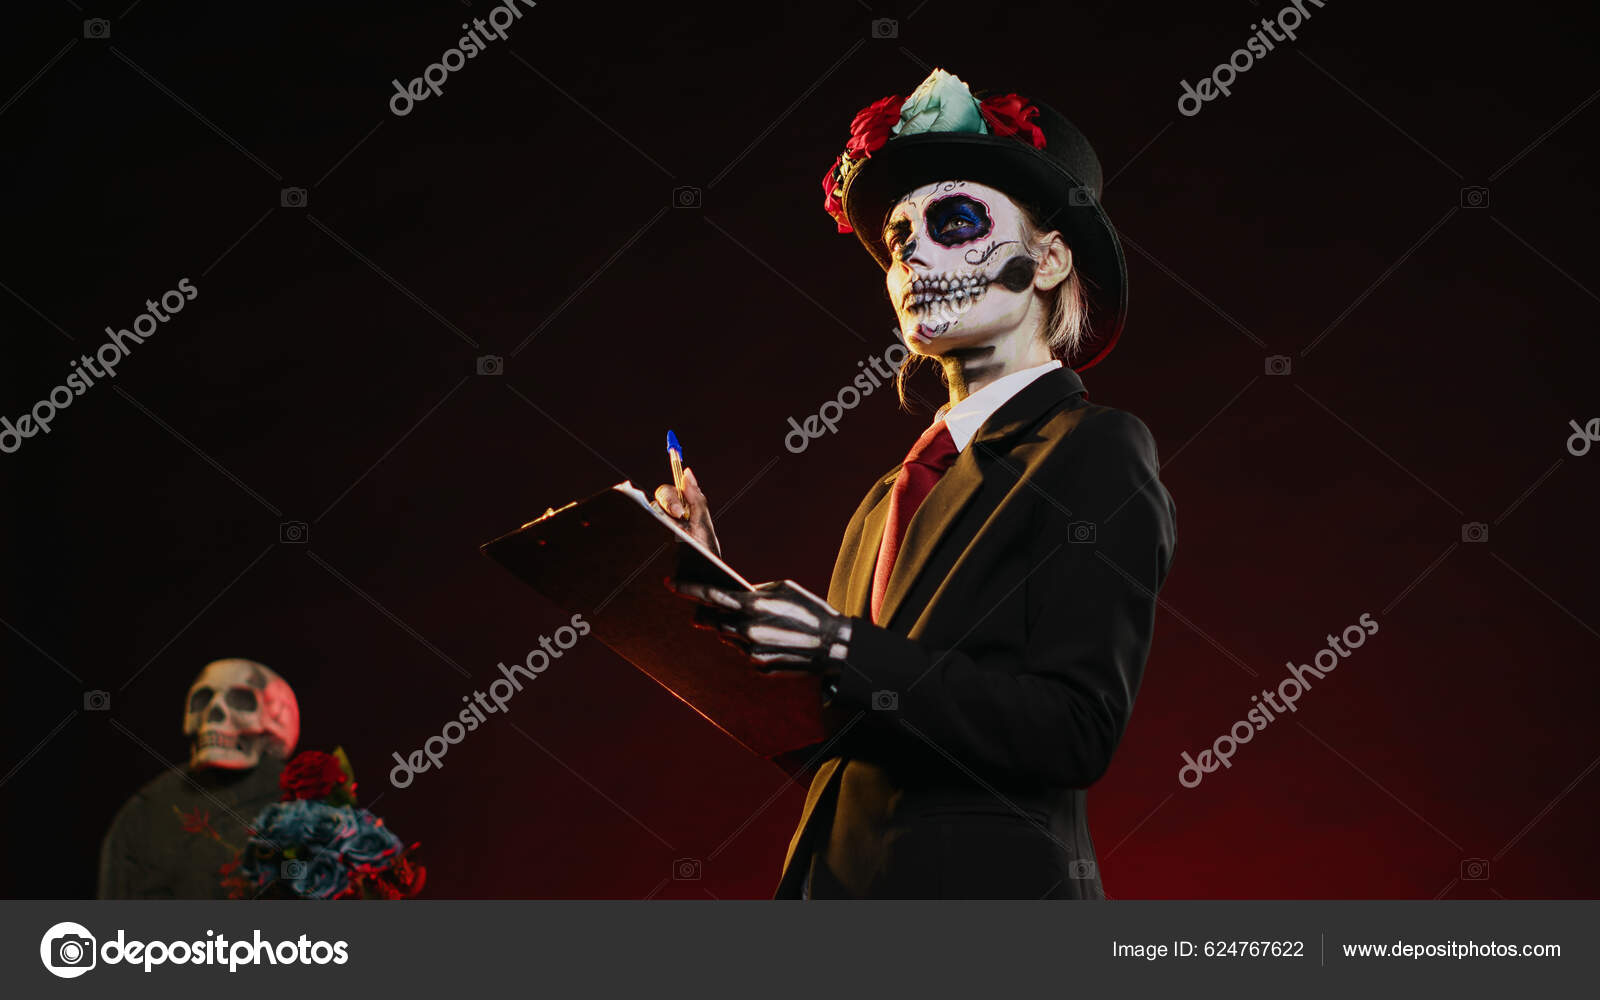 Homem vestido com fantasia de drácula para o halloween, olhando para um  crânio humano. homem com dentes de vampiro. homem assustador com fantasia  de halloween.